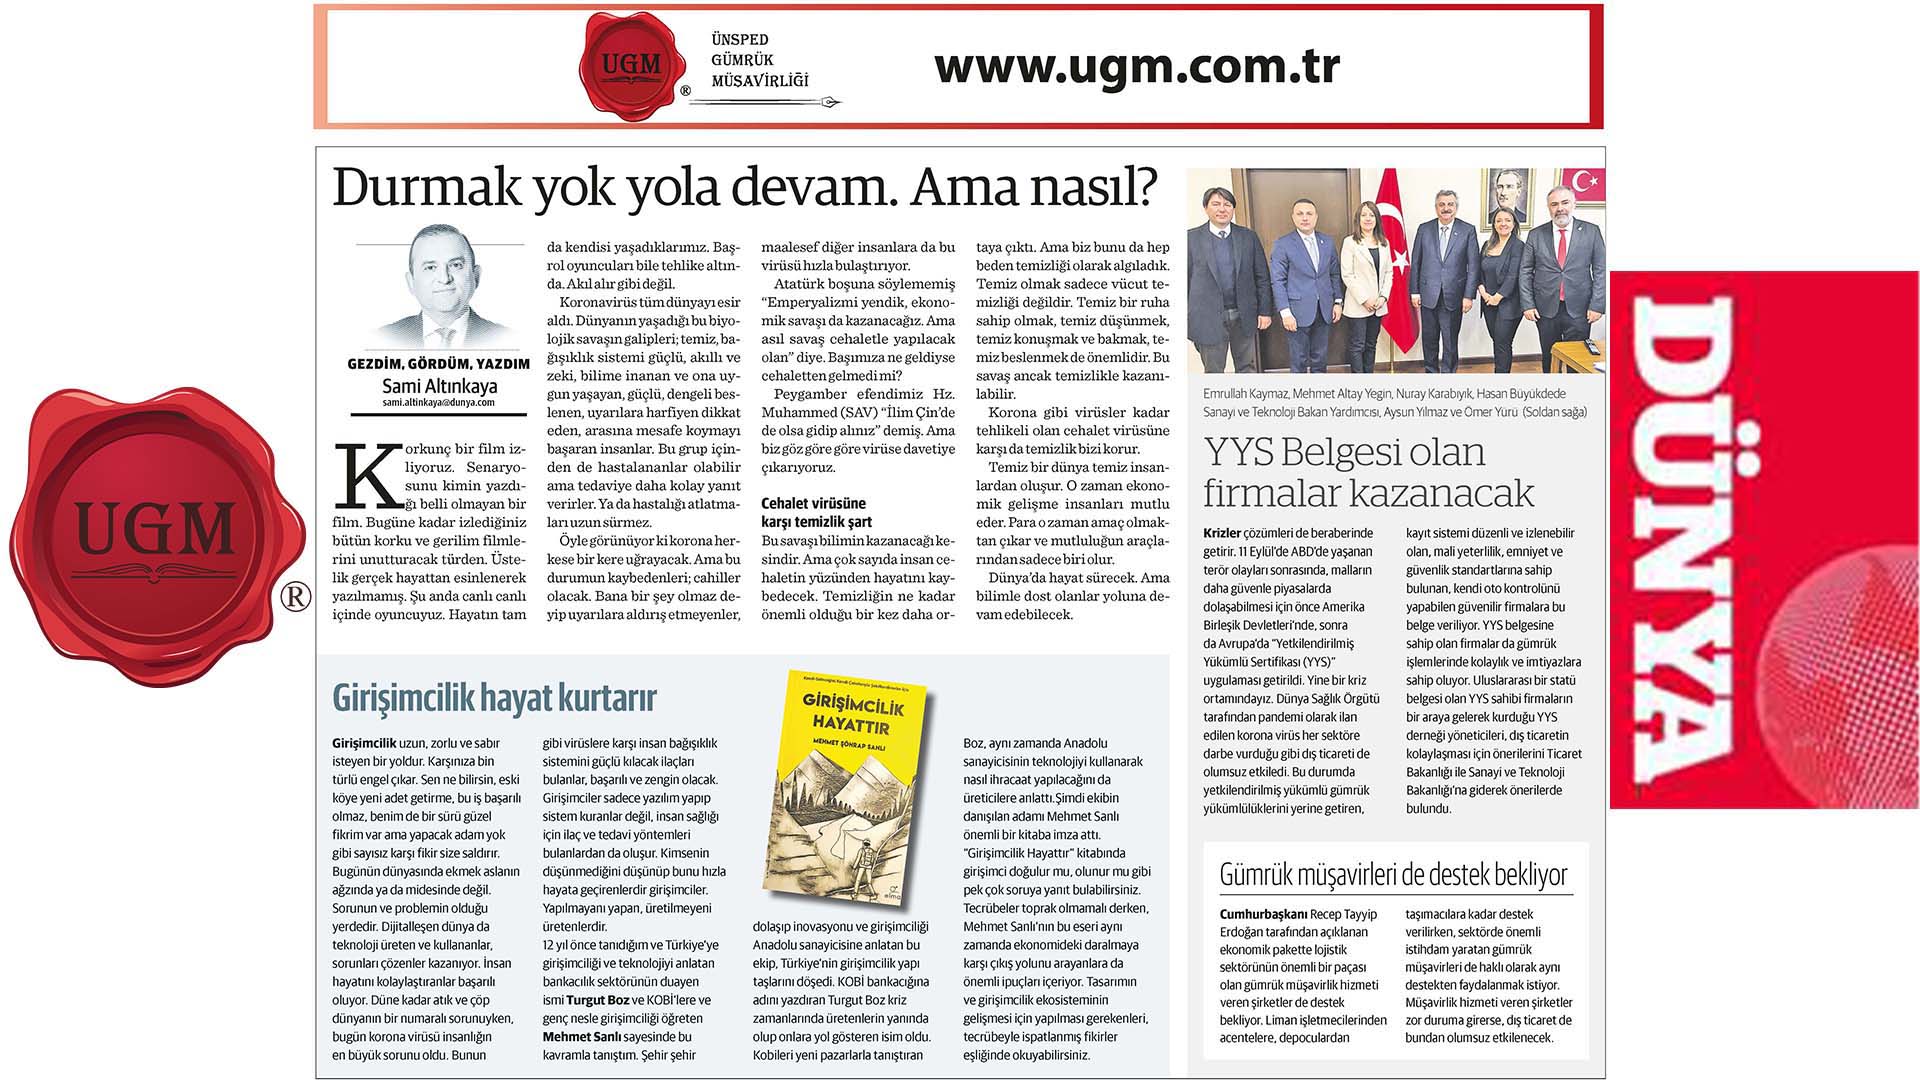 UGM Kurumsal İletişim Direktörümüz Sami Altınkaya'nın "Durmak Yok Yola Devam. Ama Nasıl? " Başlıklı Yazısı, 30.03.2020 Tarihinde Dünya Gazetesi'nde Yayınlandı.